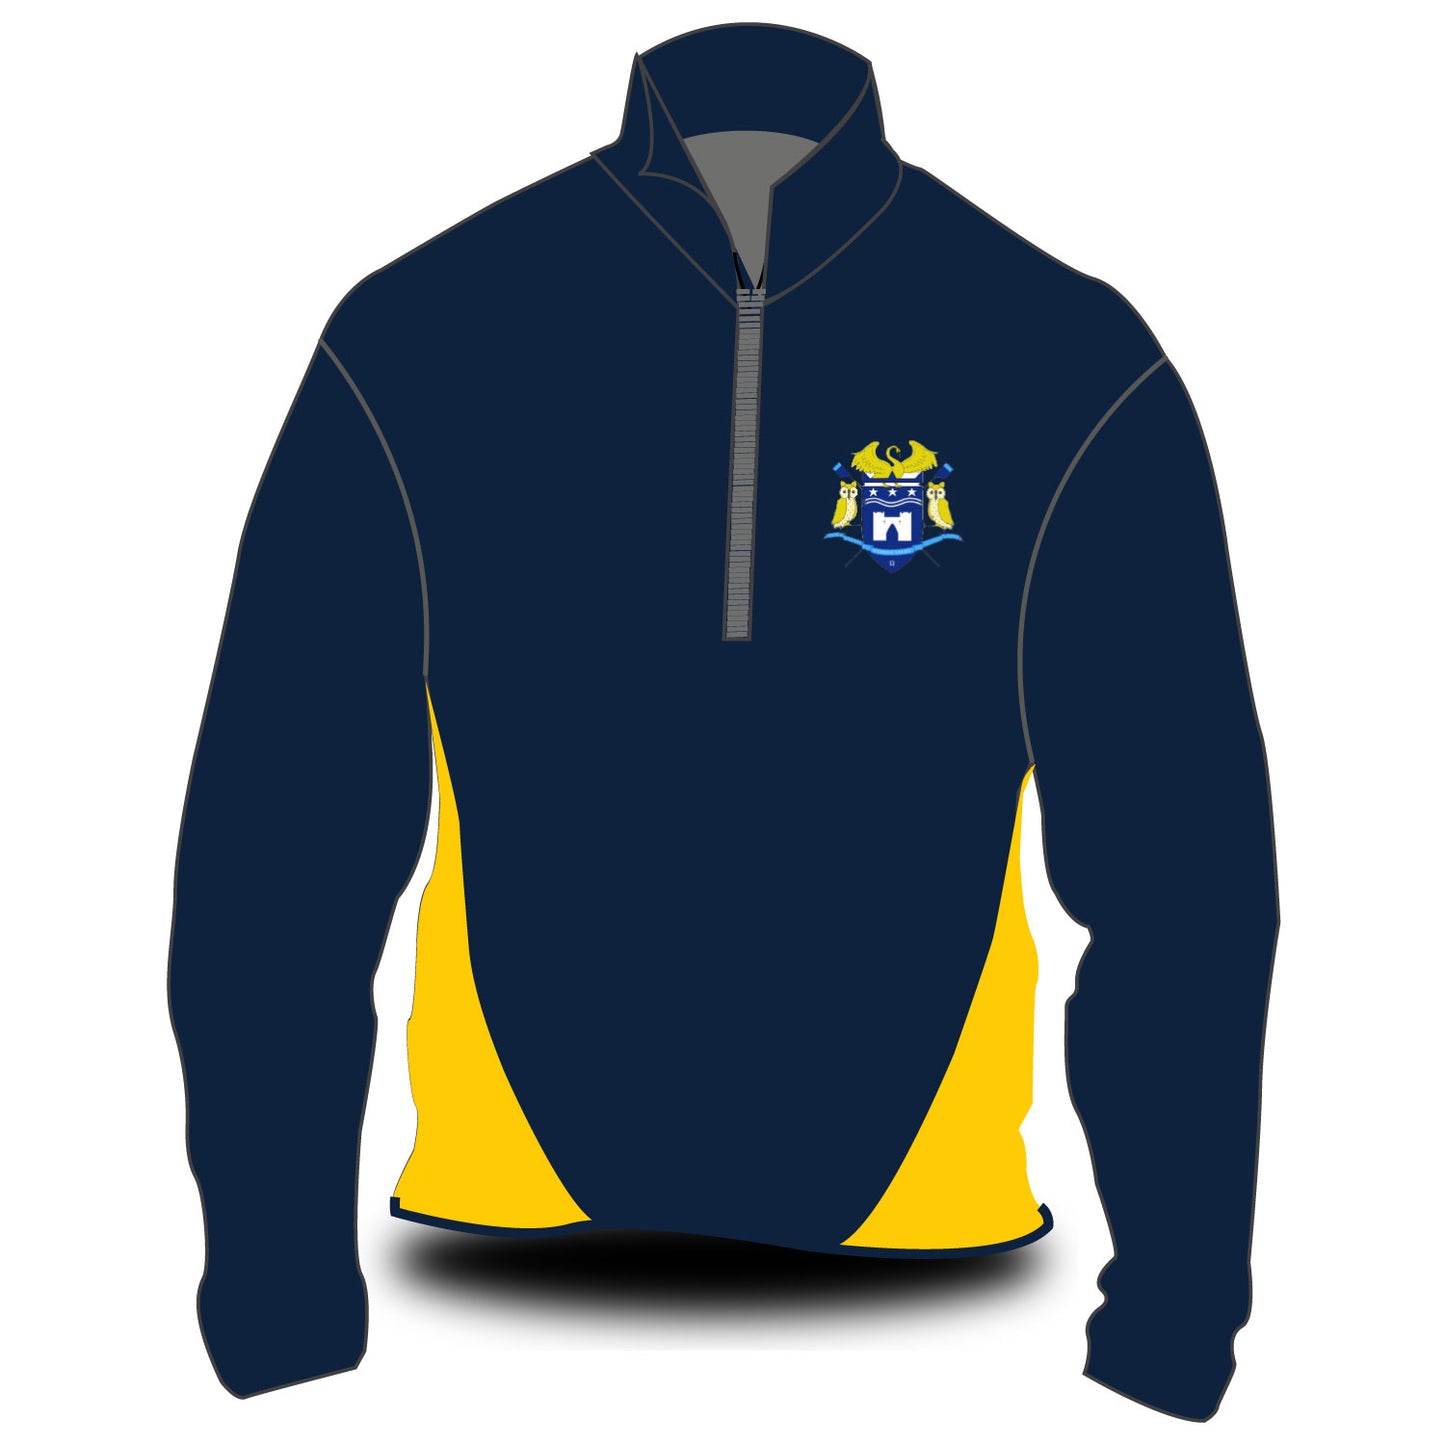 Leeds Rowing Club 24-7 Softshell Jacket